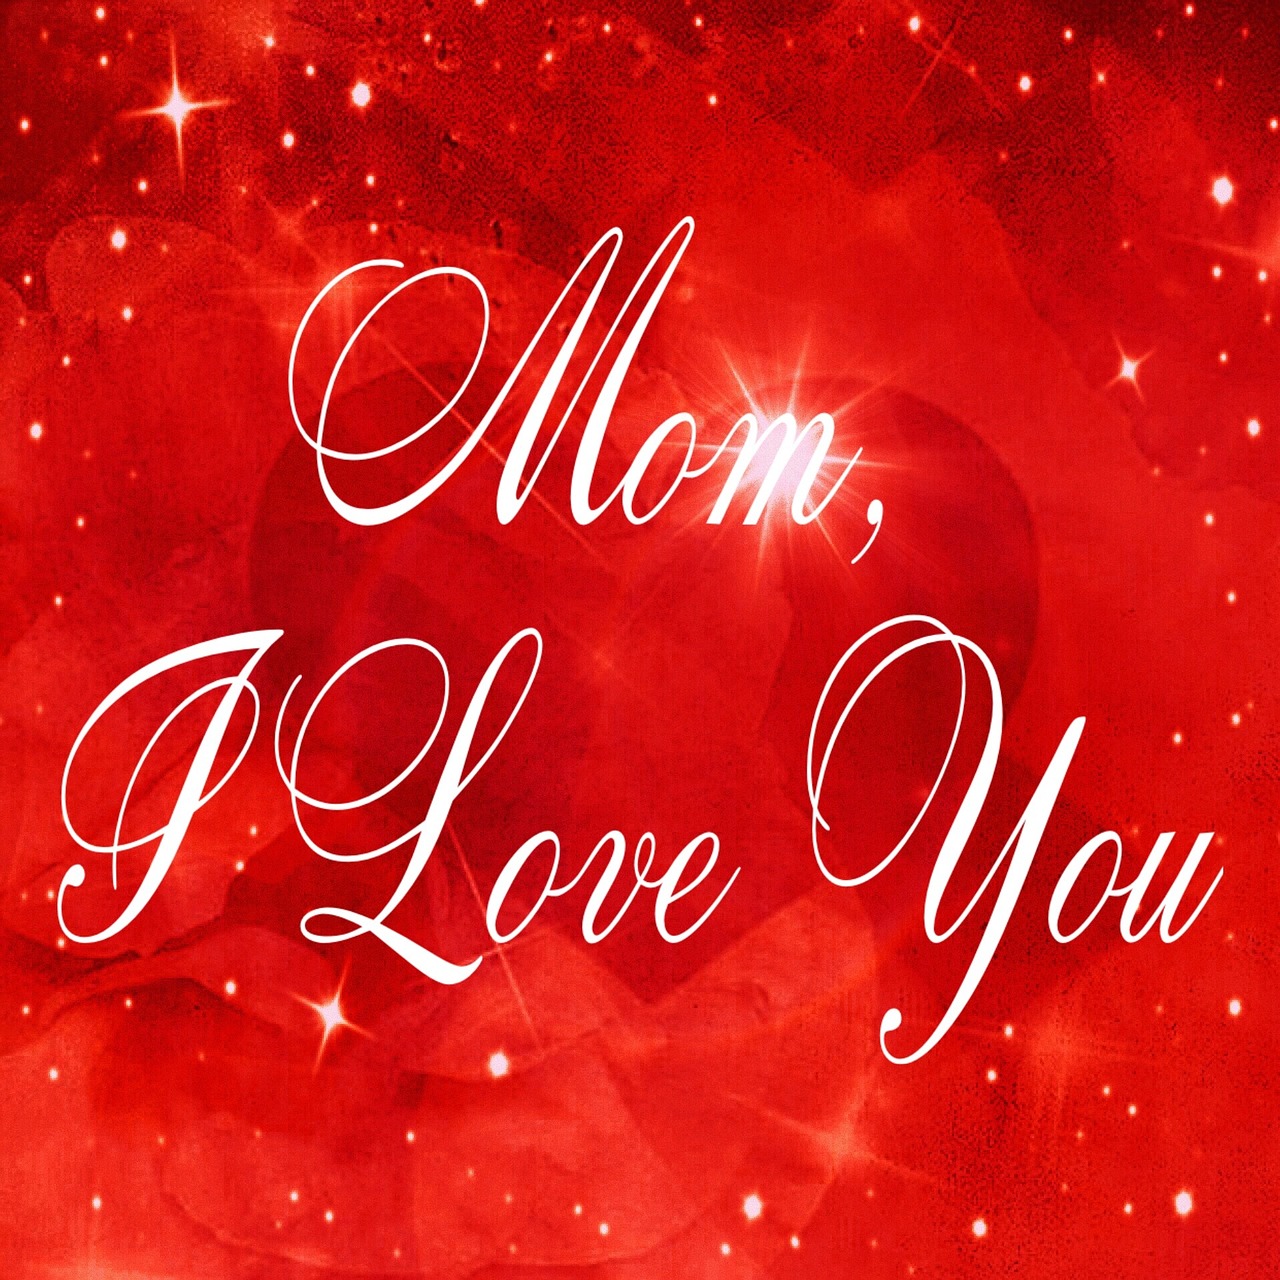 Motinos Diena, Pasveikinimas, Motina, Dėkingumas, Širdis, Apie Meilę Motinos Dienai, Meilė, Ačiū, Sveikinimai, Fonas